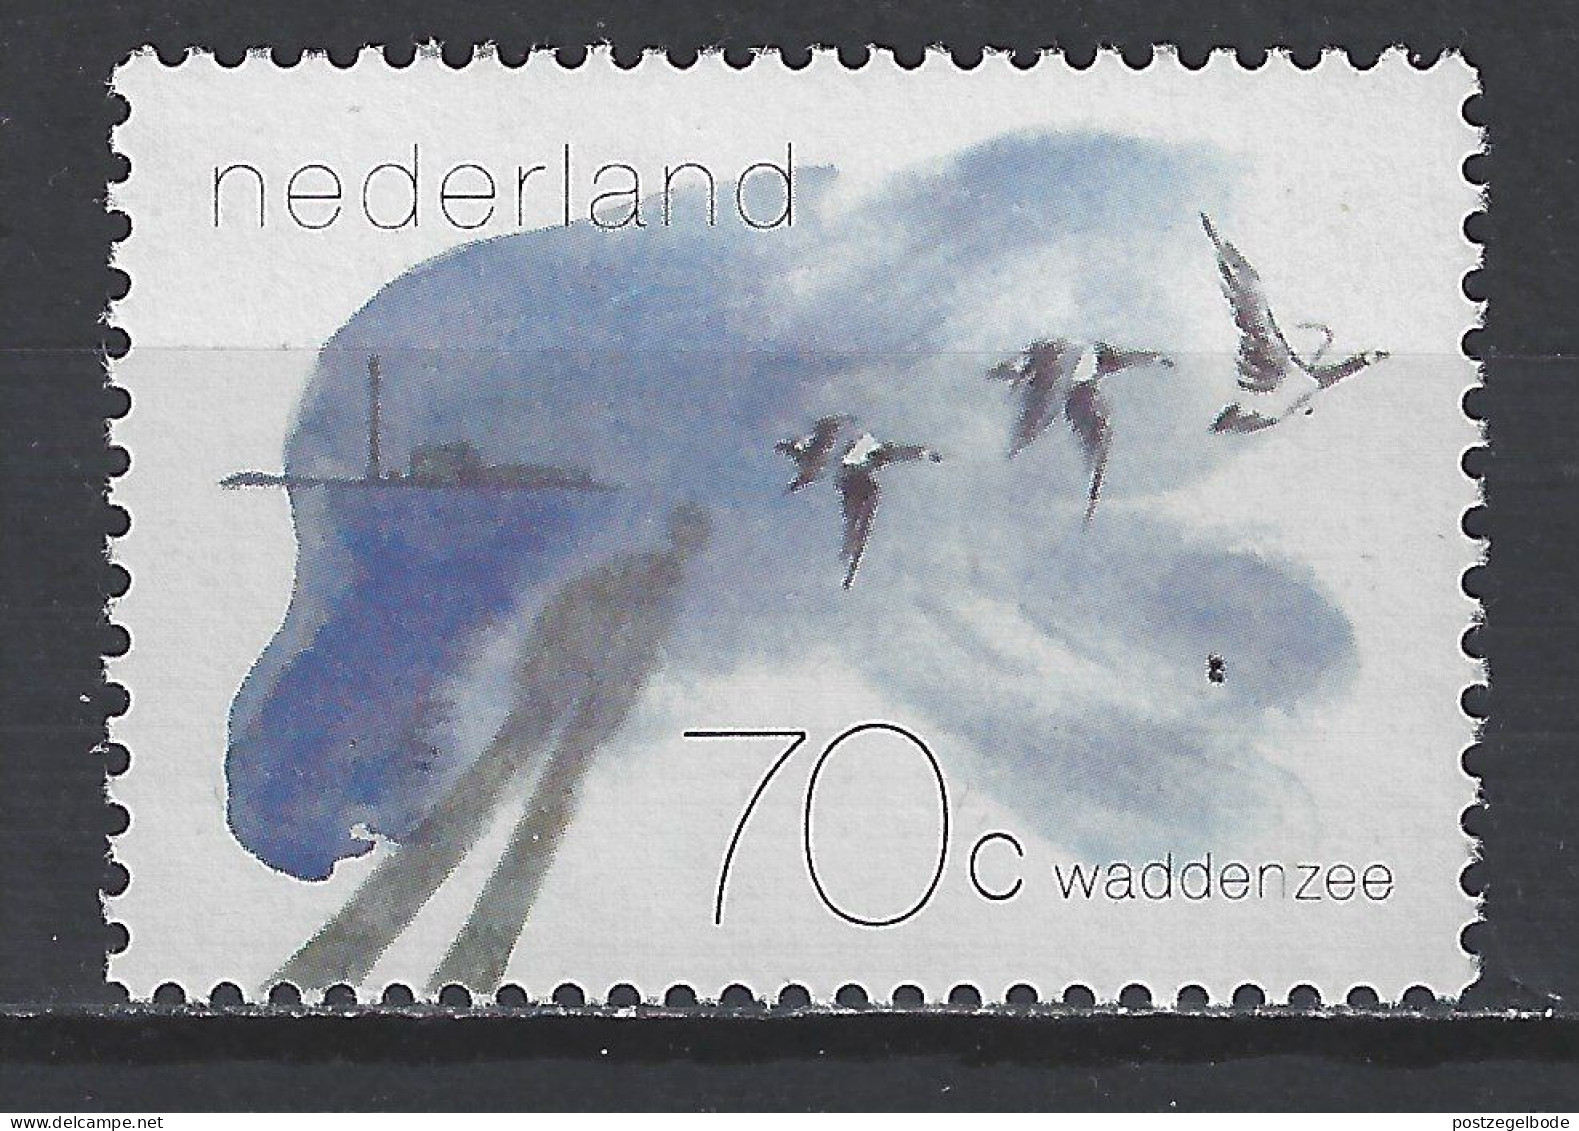 Netherlands Nederland Pays Bas Holanda Niederlande MNH ; Gans Goose Oie Ganso Brandgans Vogel Bird Ave Oiseau - Oies